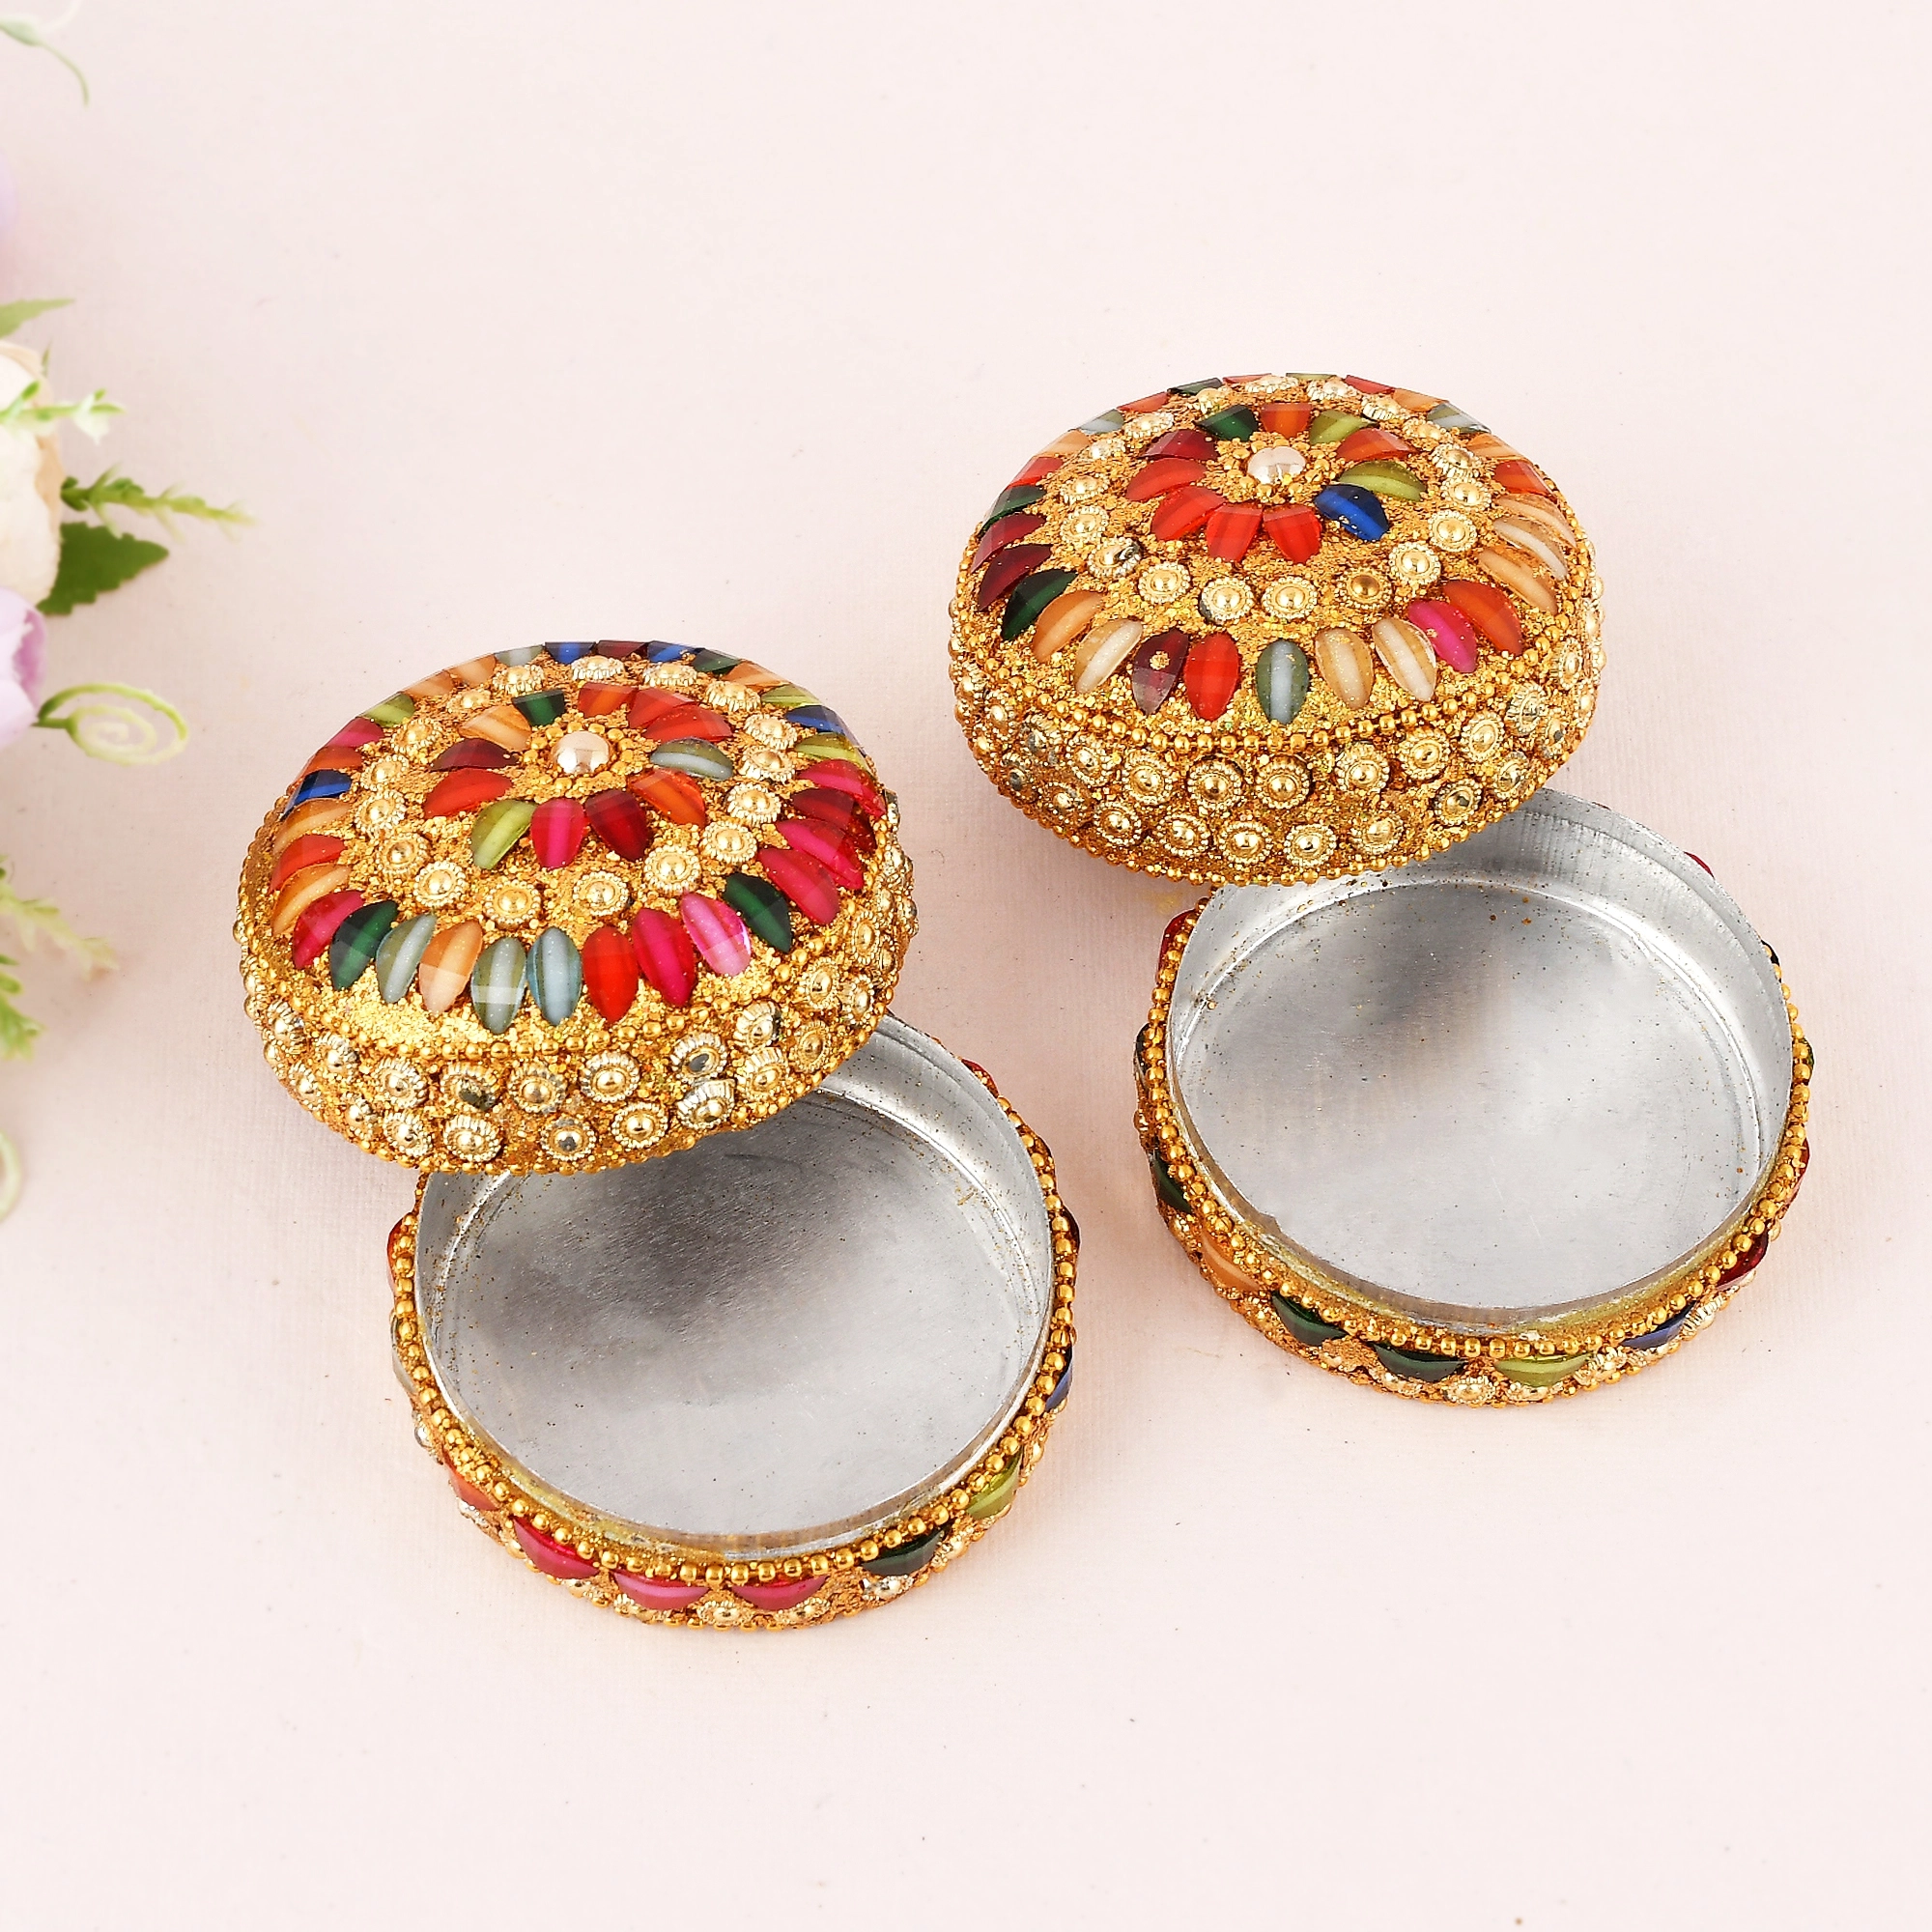 Craftam Decorative Jewelry Dibbi, Vanity Box, Sindoor Dabbi, Kumkum Box for Wedding ((Pack of 2)